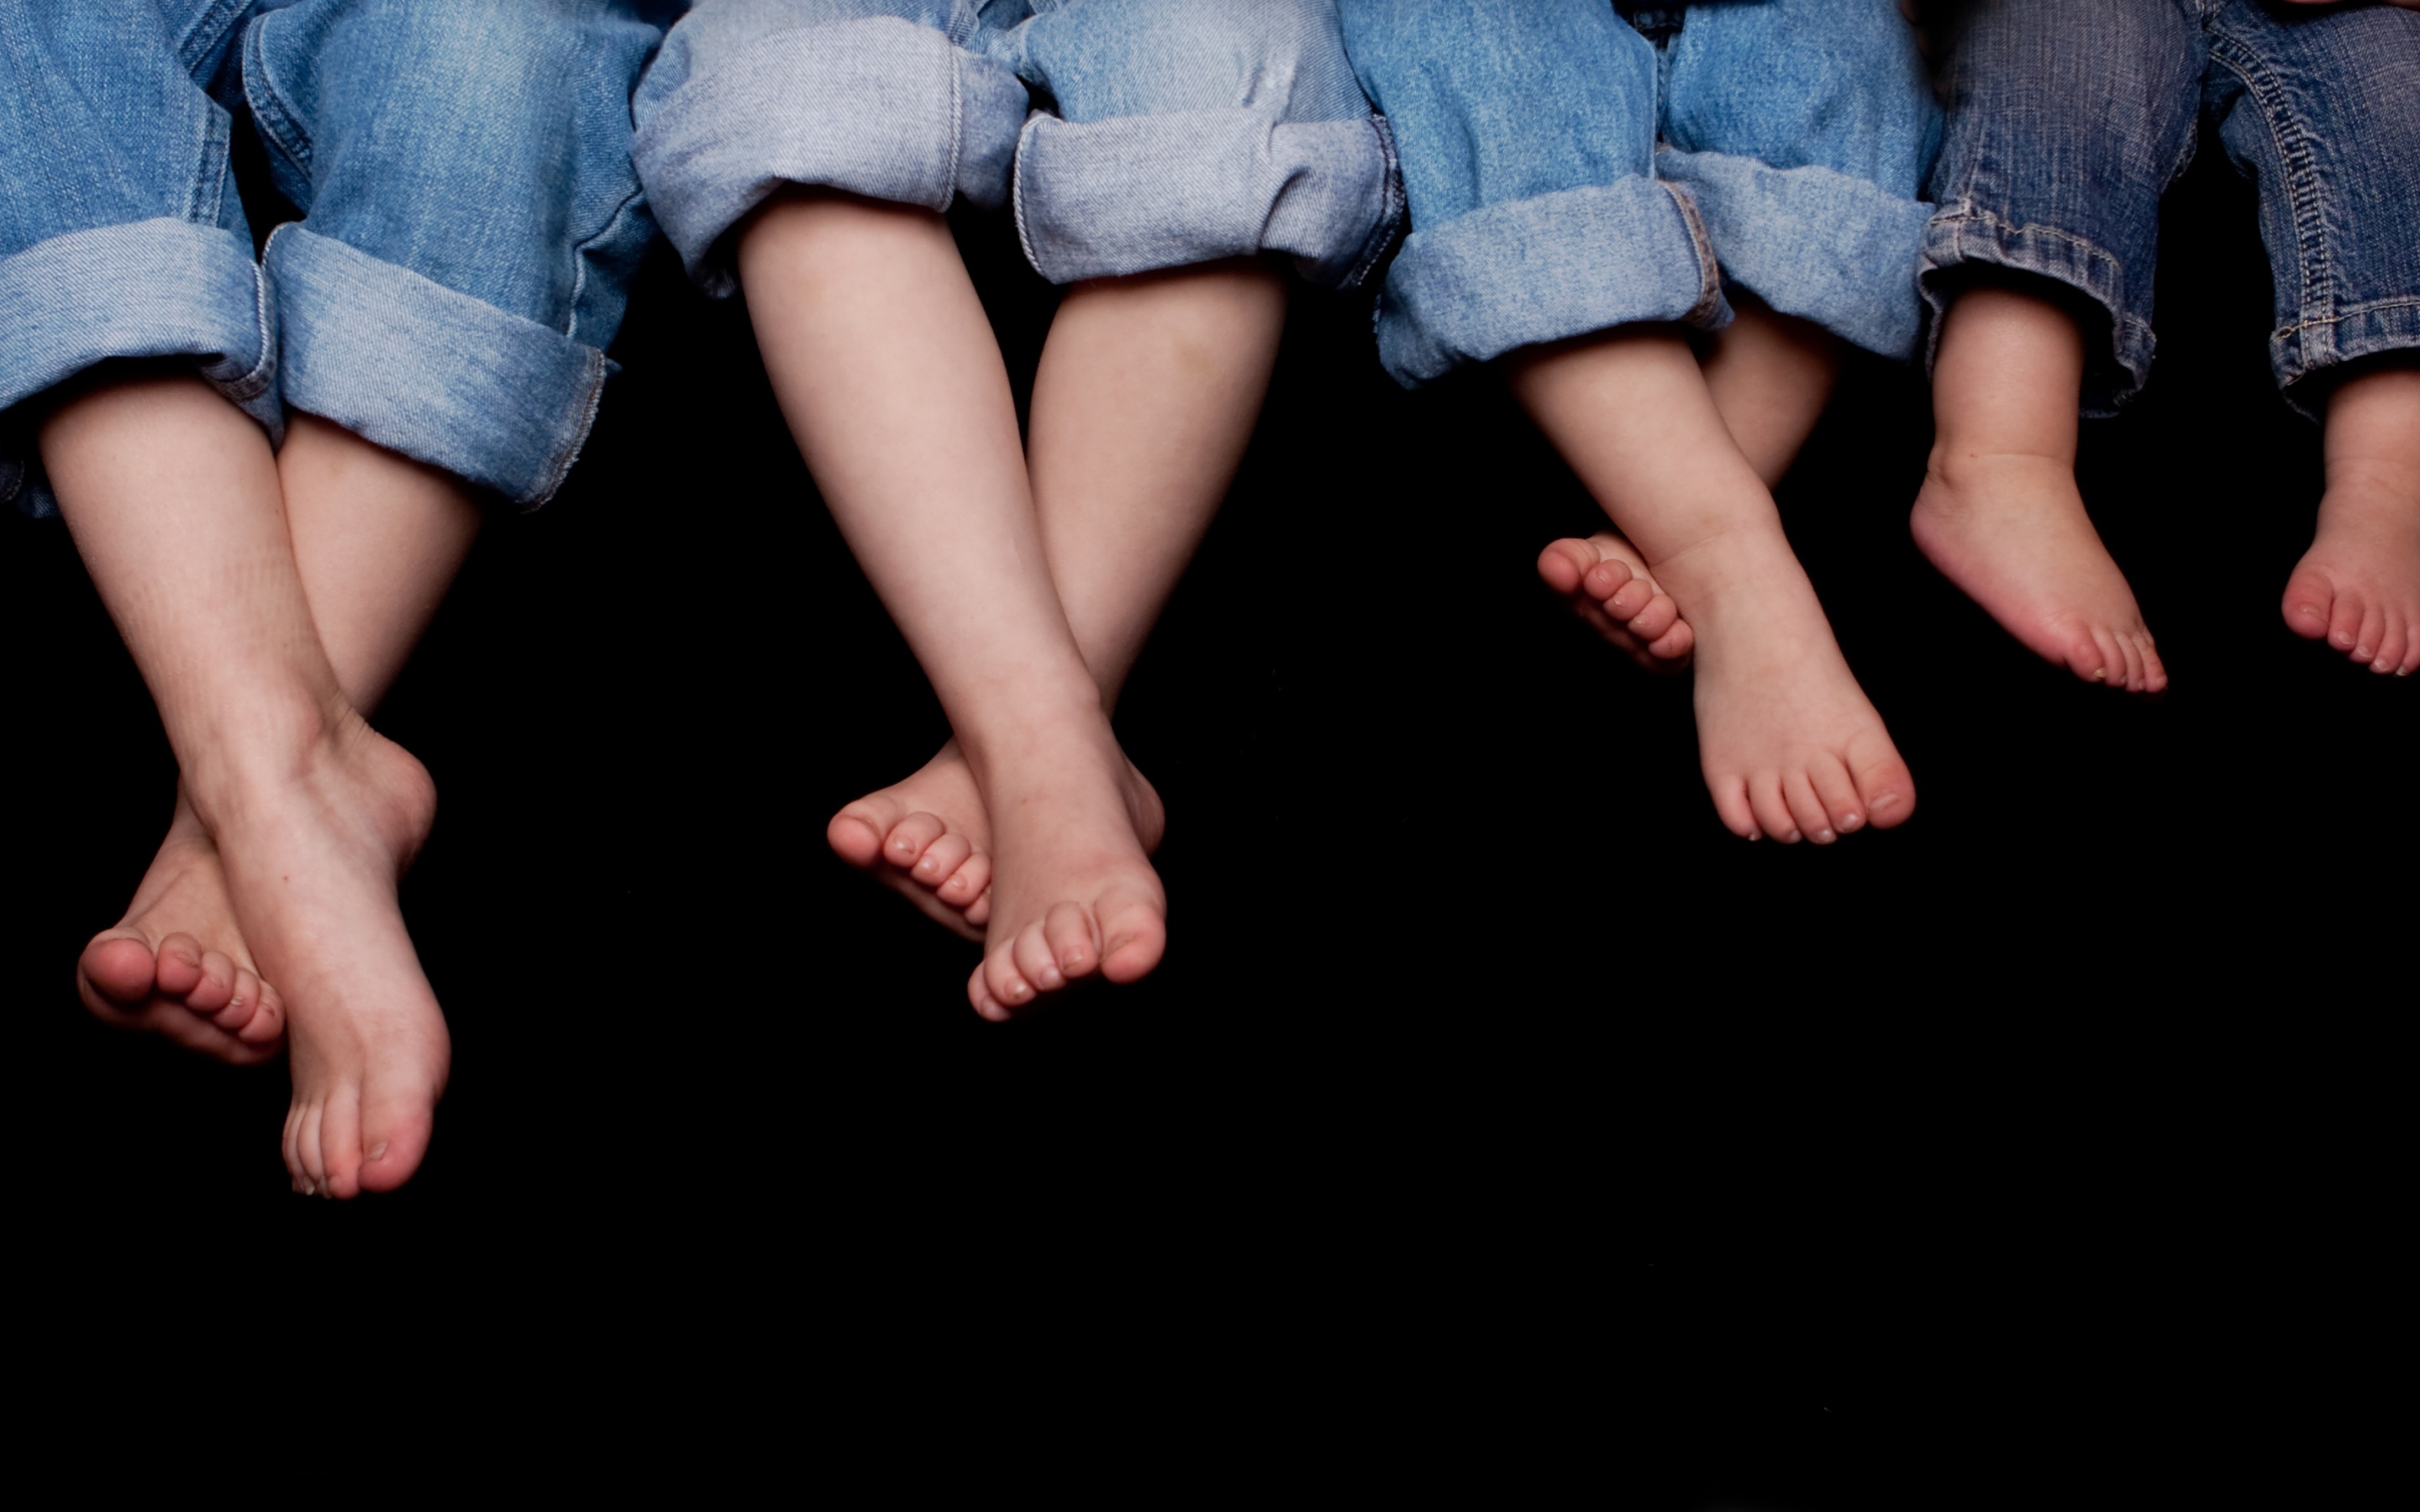 Kids' Legs, jeans, portrait, 2880x1800 wallpaper